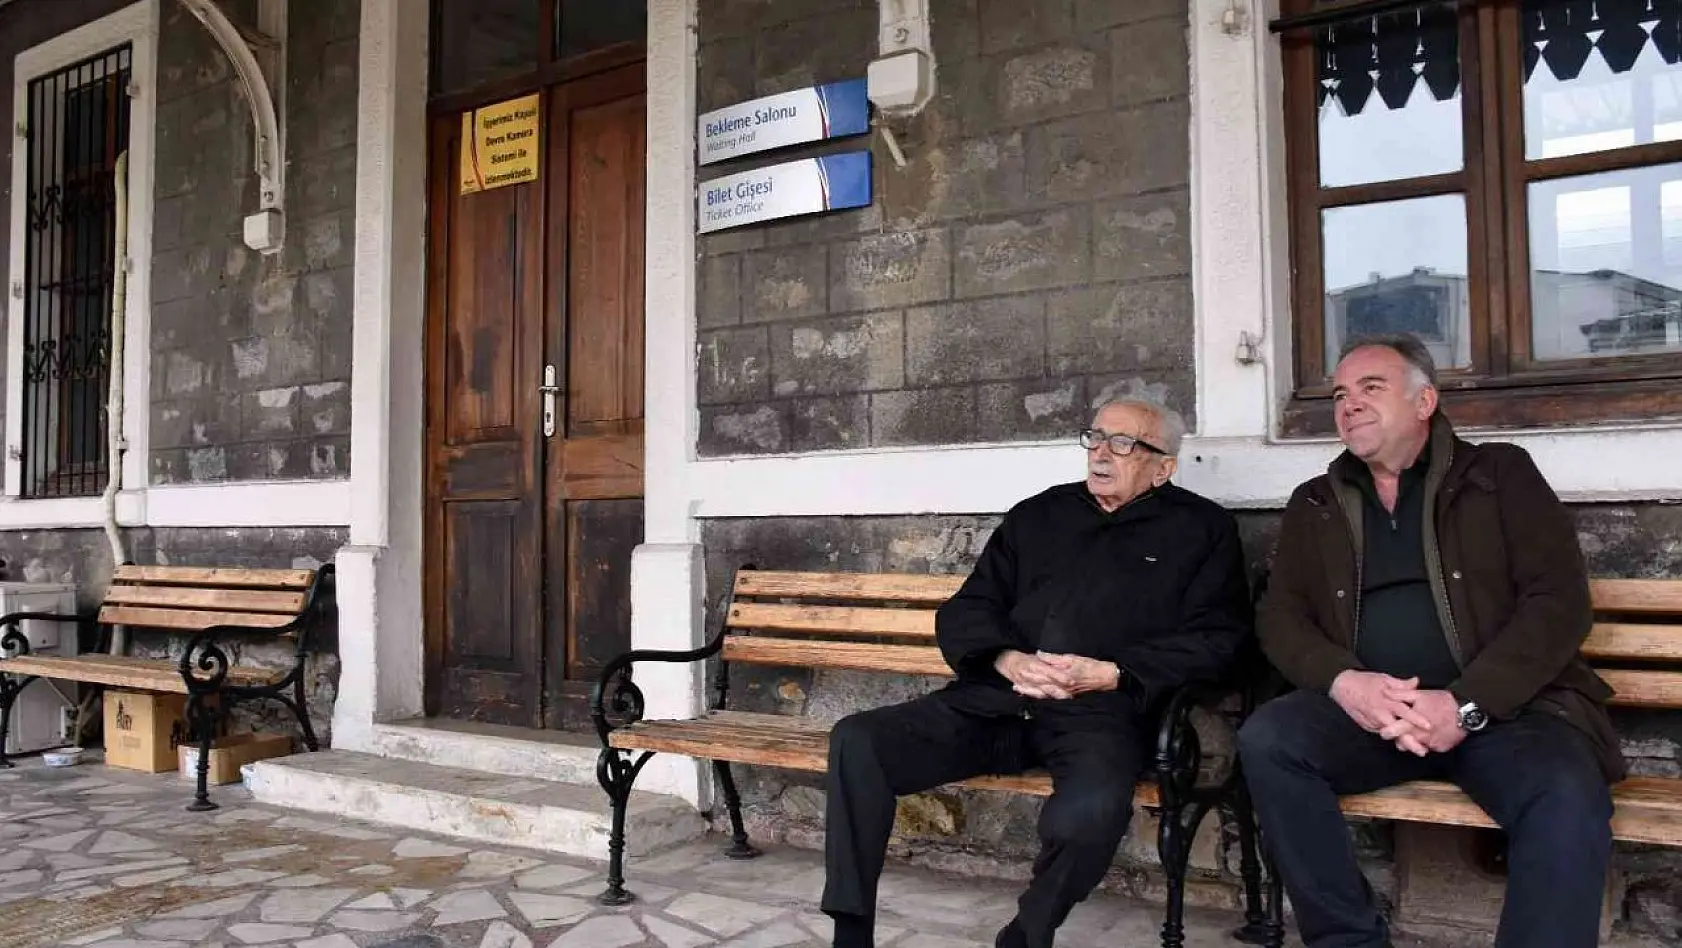 Yazar Benazus, Atatürk'le tanıştığı yere 85 yıl sonra geldi